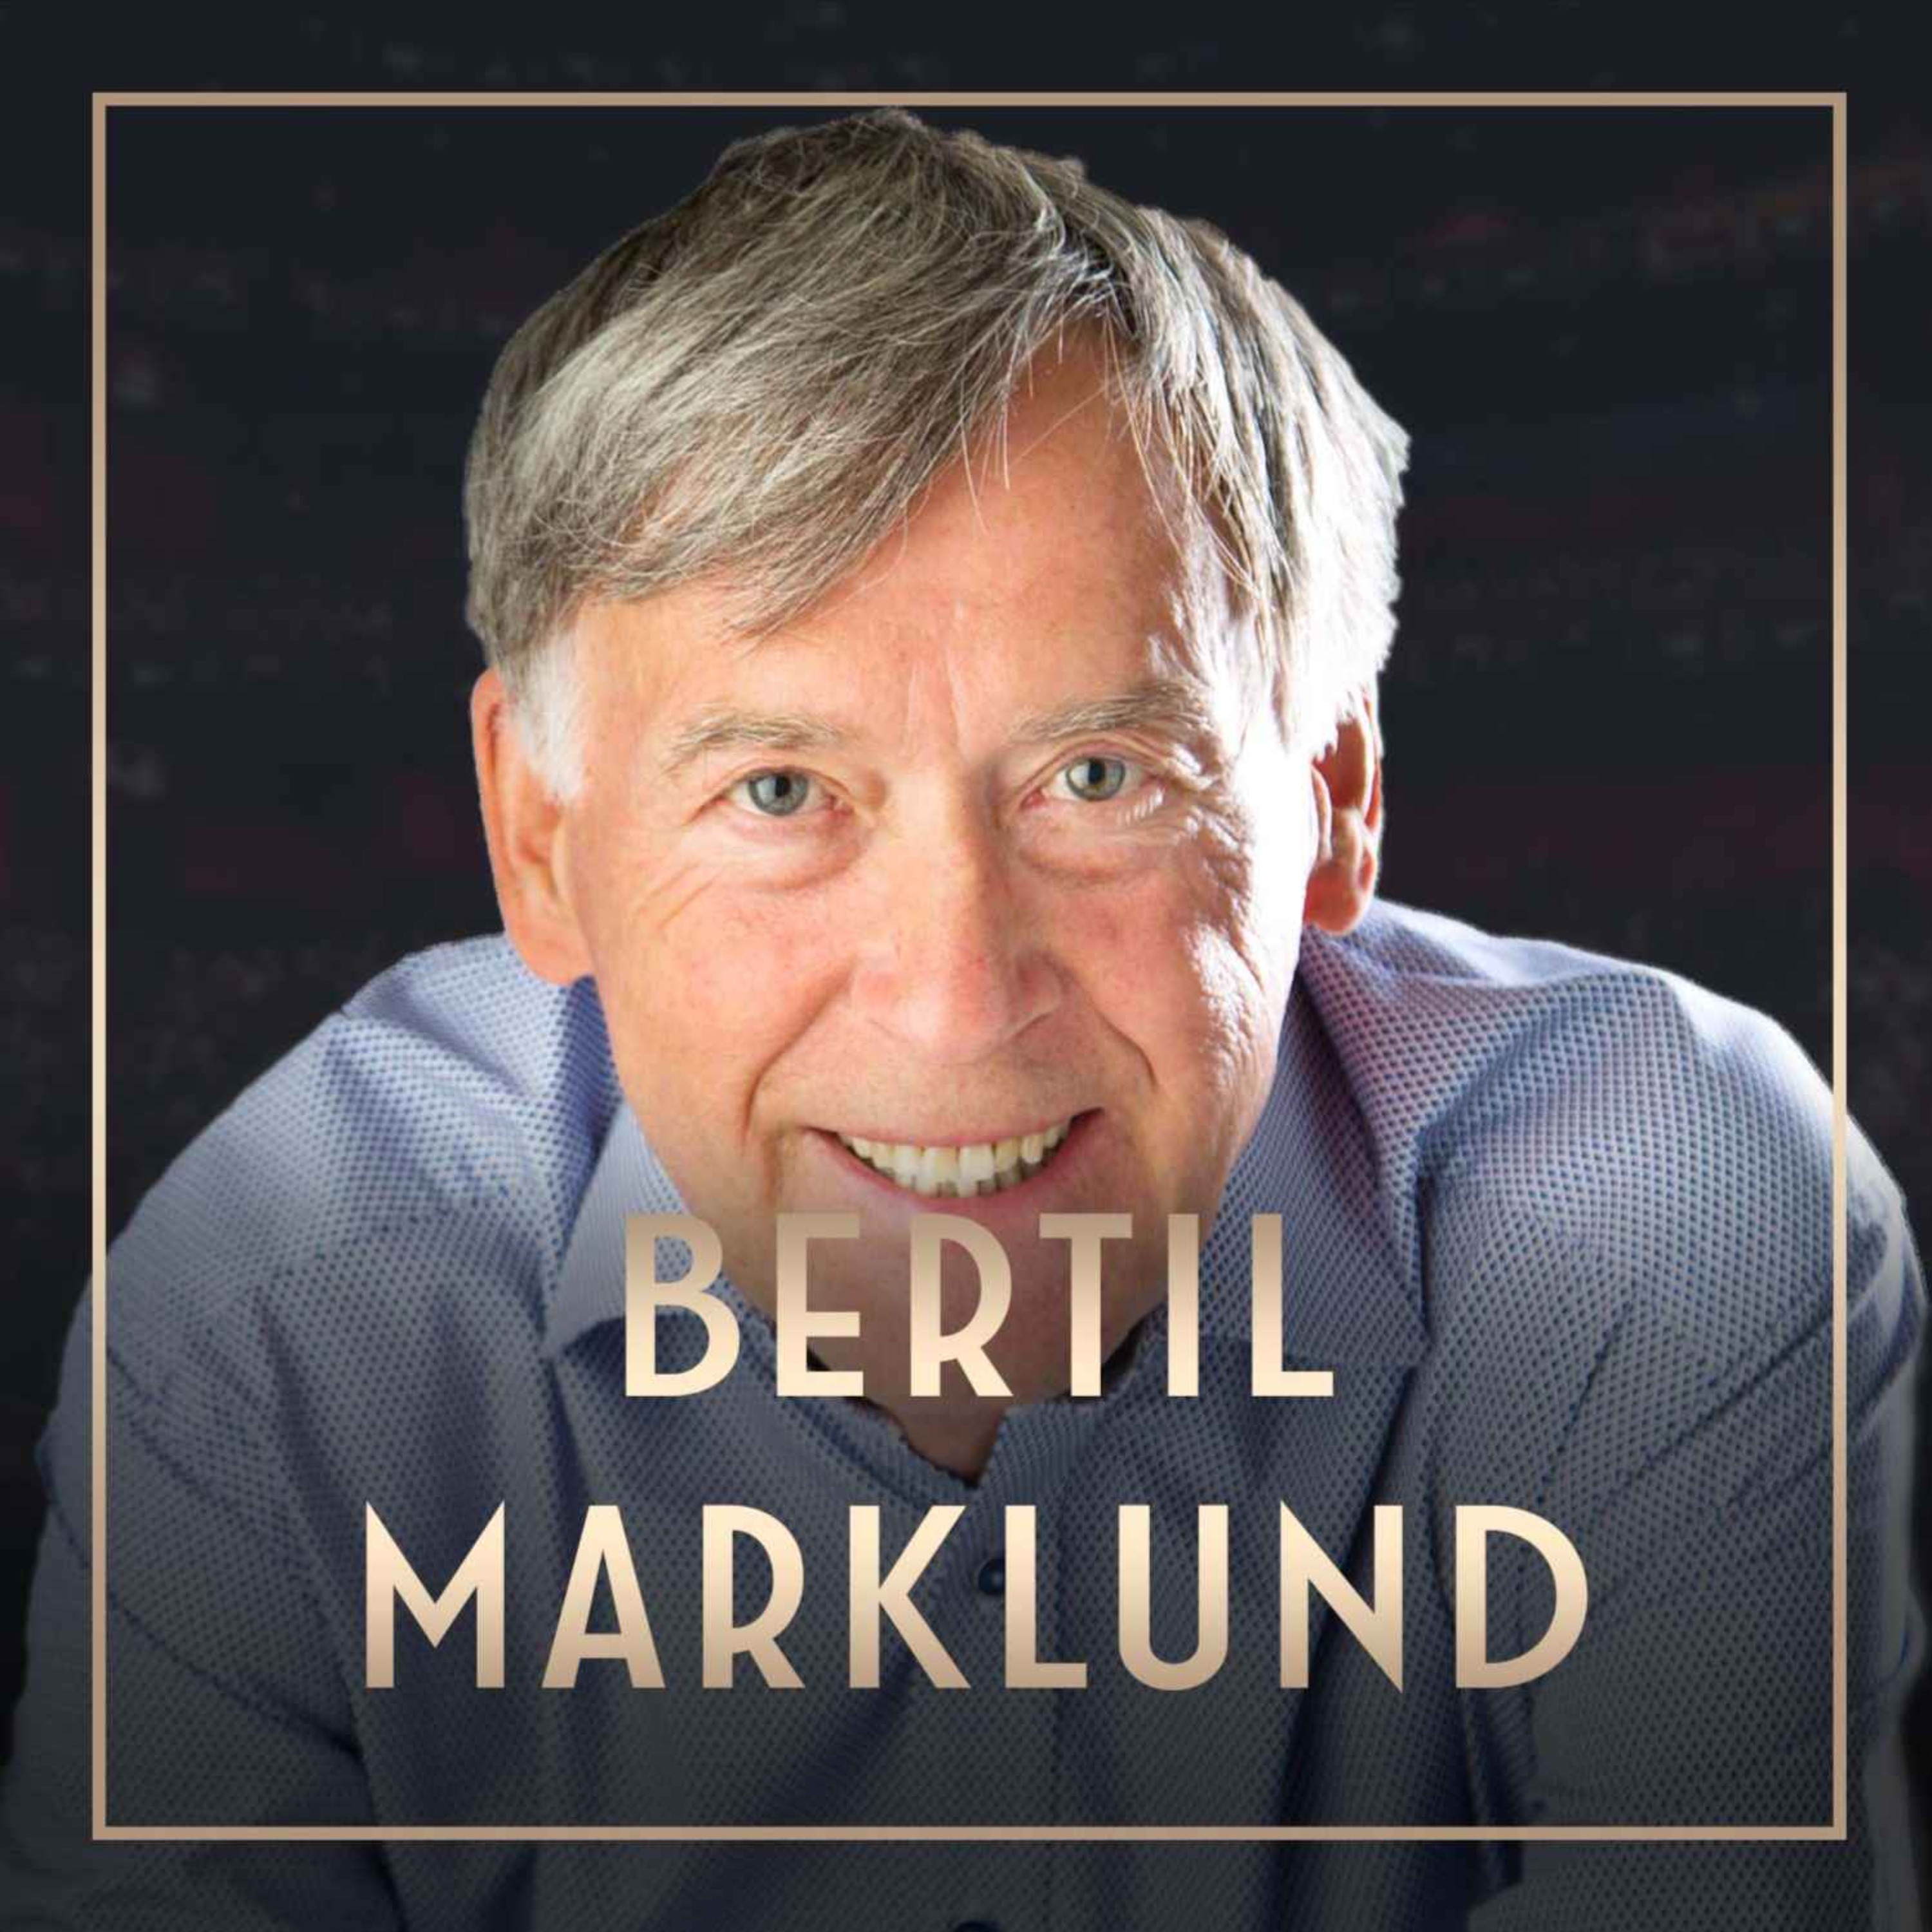 561. Bertil Marklund - Professorn: Så lever du längre, Short